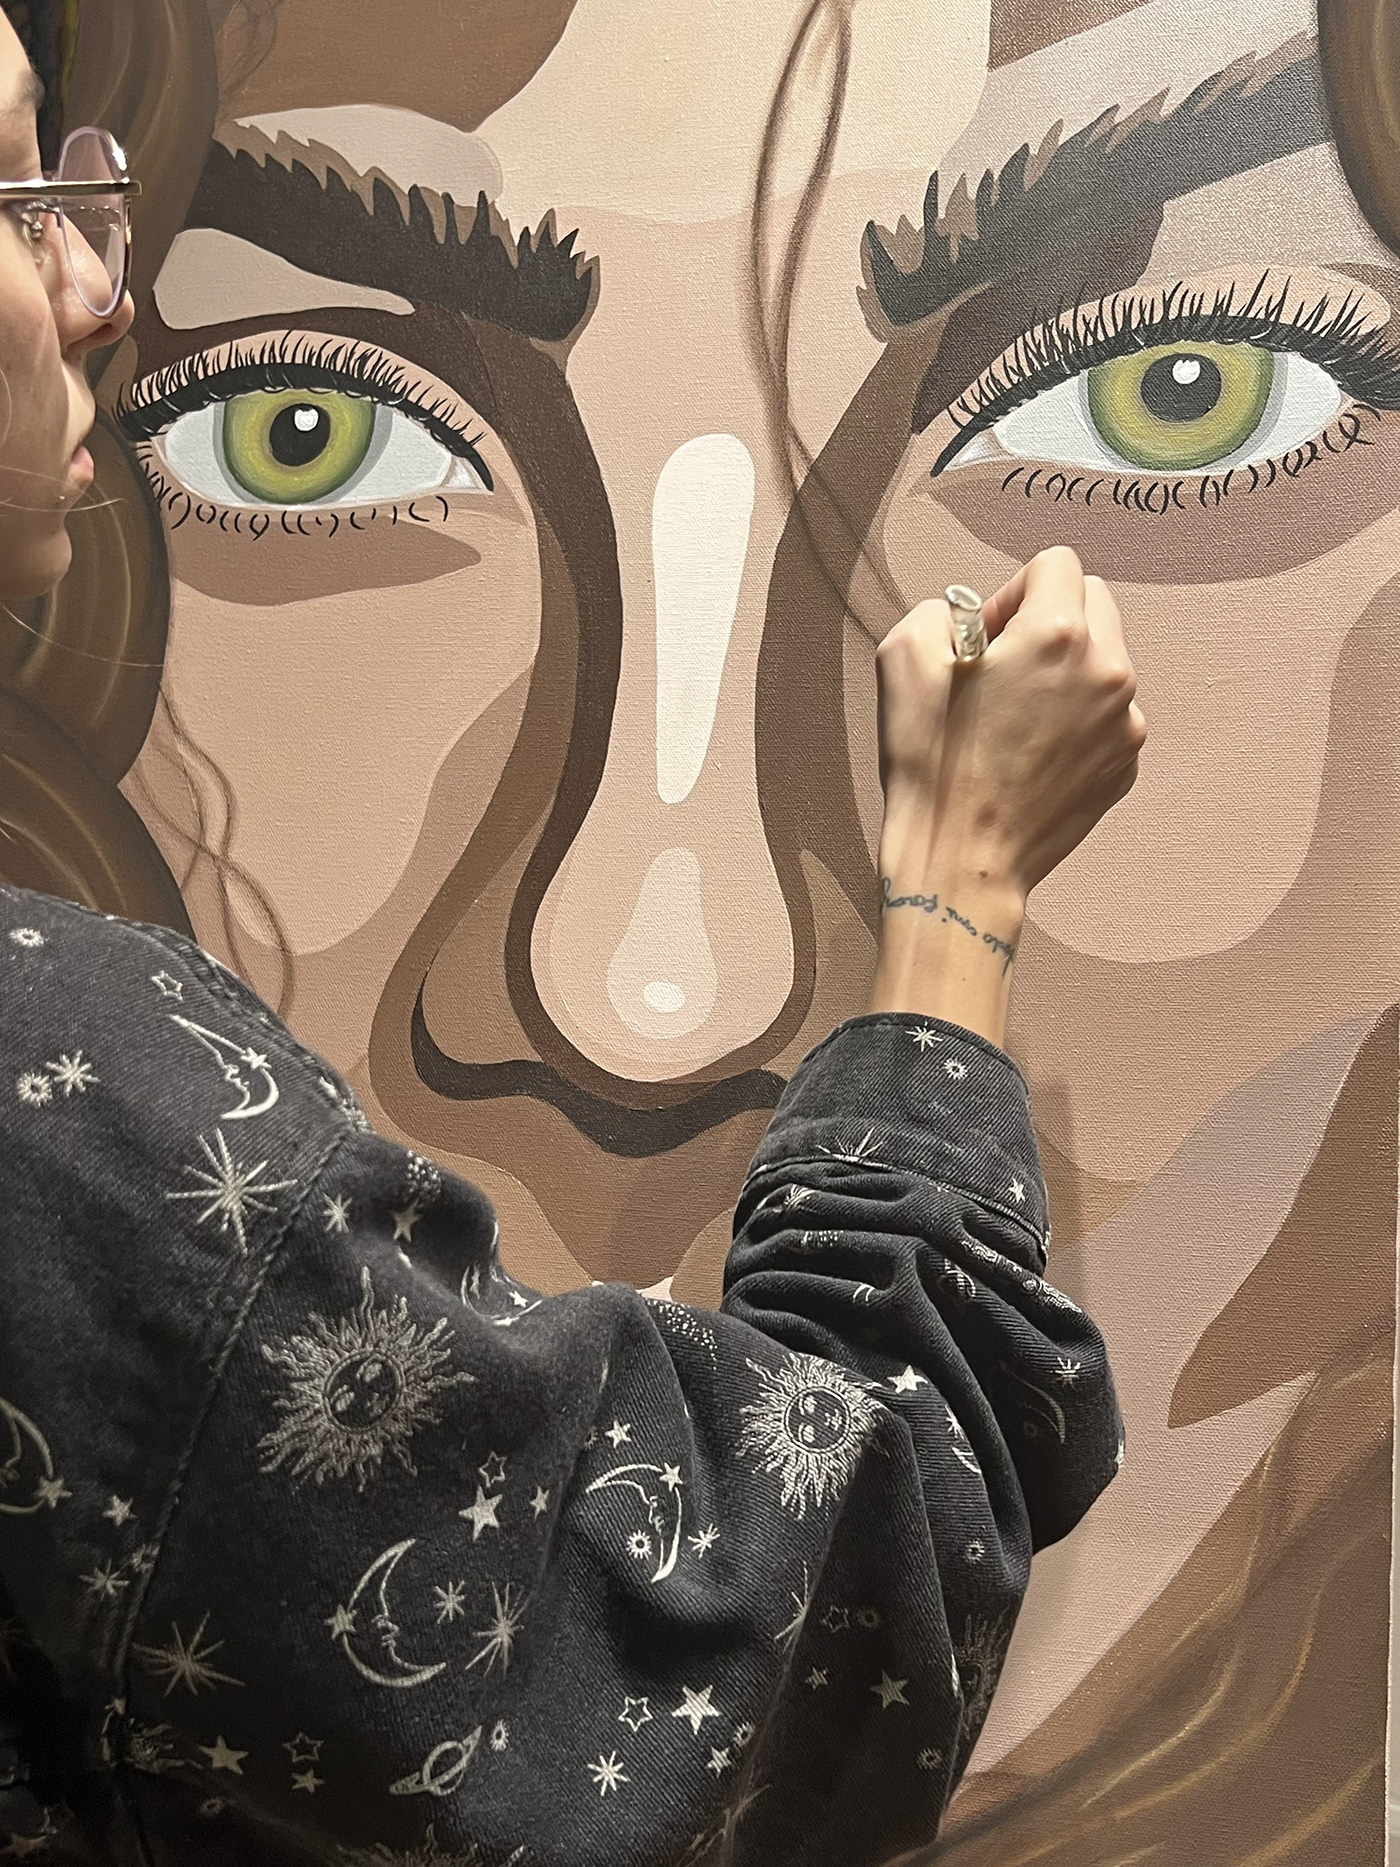 Acrylic paint artist Digital Art  businesswomen